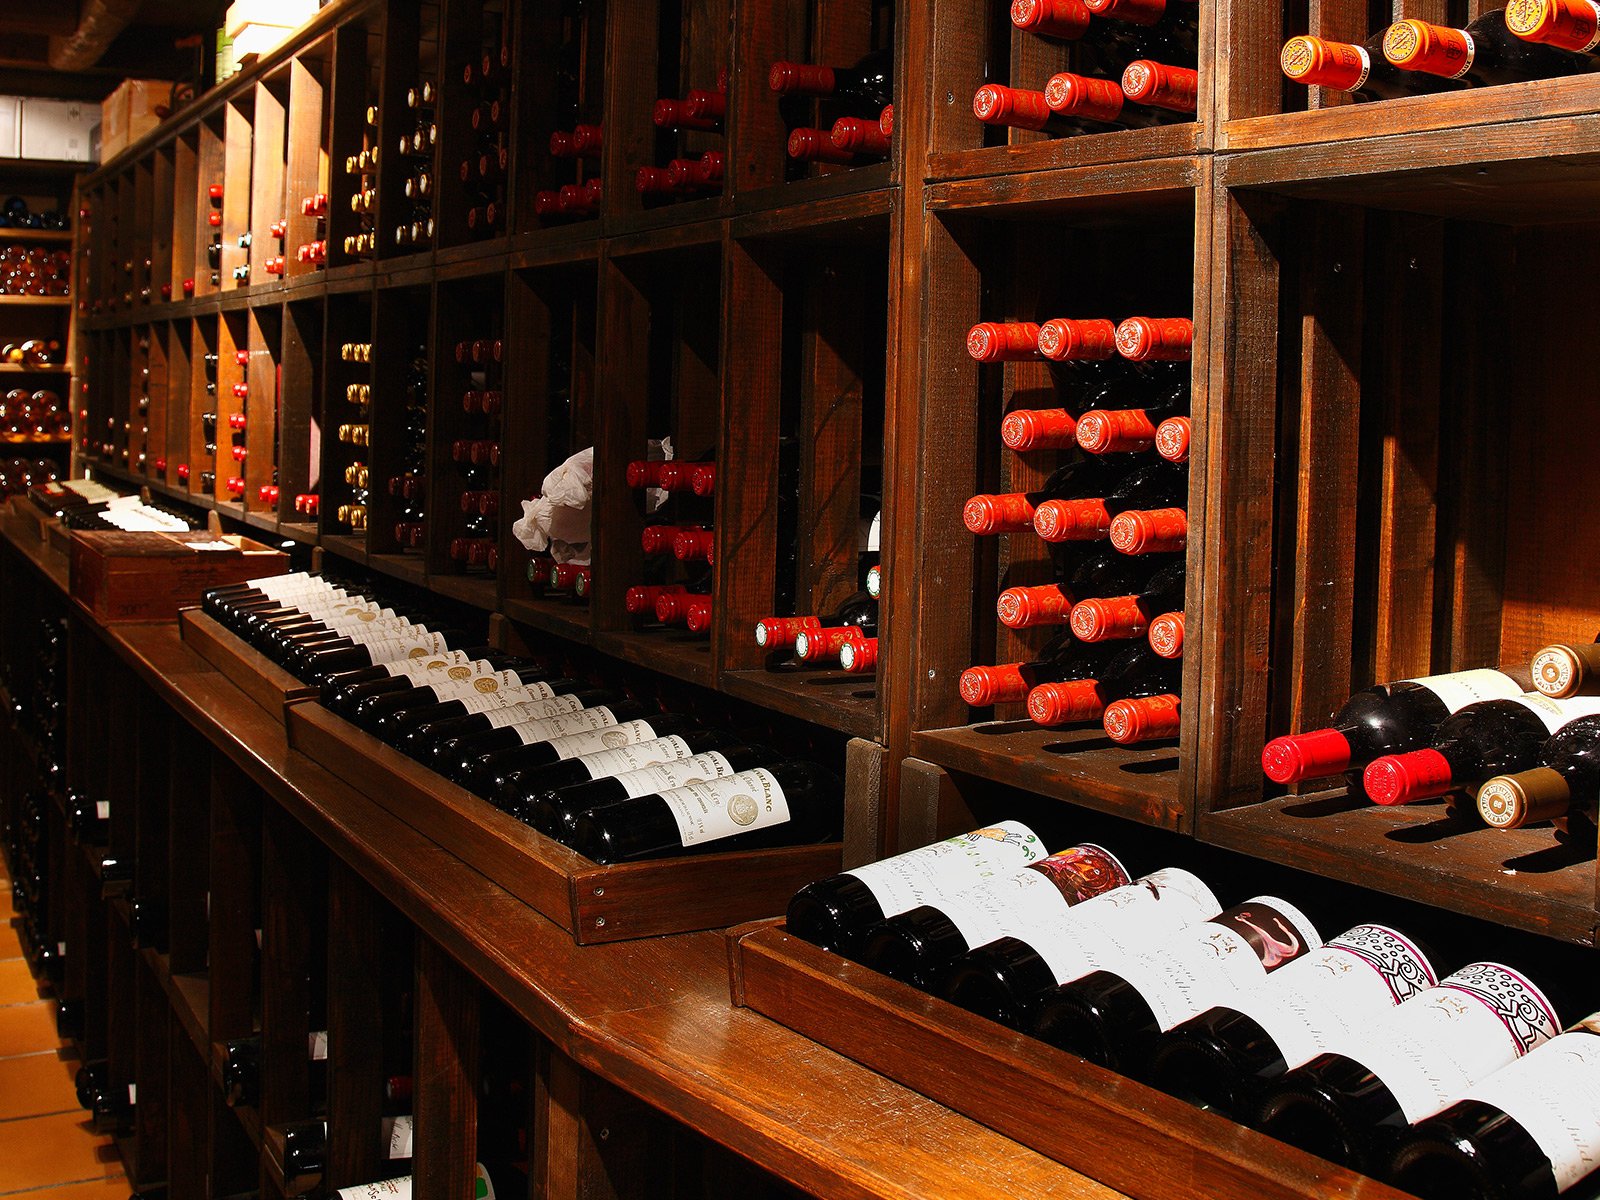 Das Weingut und Hotel Domaine de Châteauvieux bietet einen eindrucksvollen Weinkeller mit mehr als 800 erlesene Positionen auf seiner Karte.